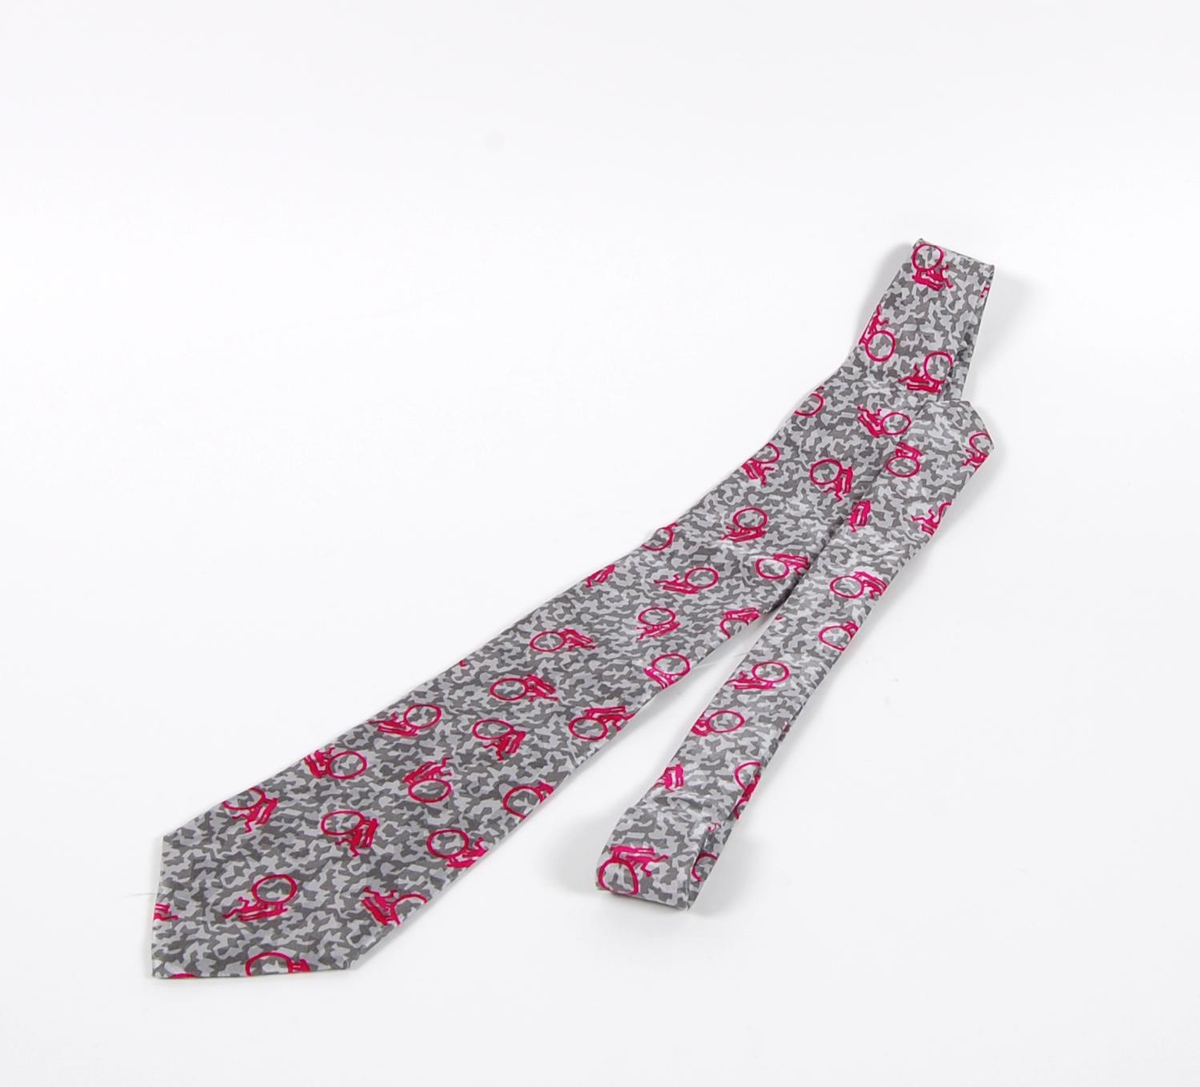 Grått slips av silke med rosa piktogrammer. Piktogrammene inngikk i LOOCs designprogram. Det er også piktogrammer på innsiden av slipset. På slipset er det påsydd merke med logo for de olympiske vinterleker på Lillehammer i 1994.